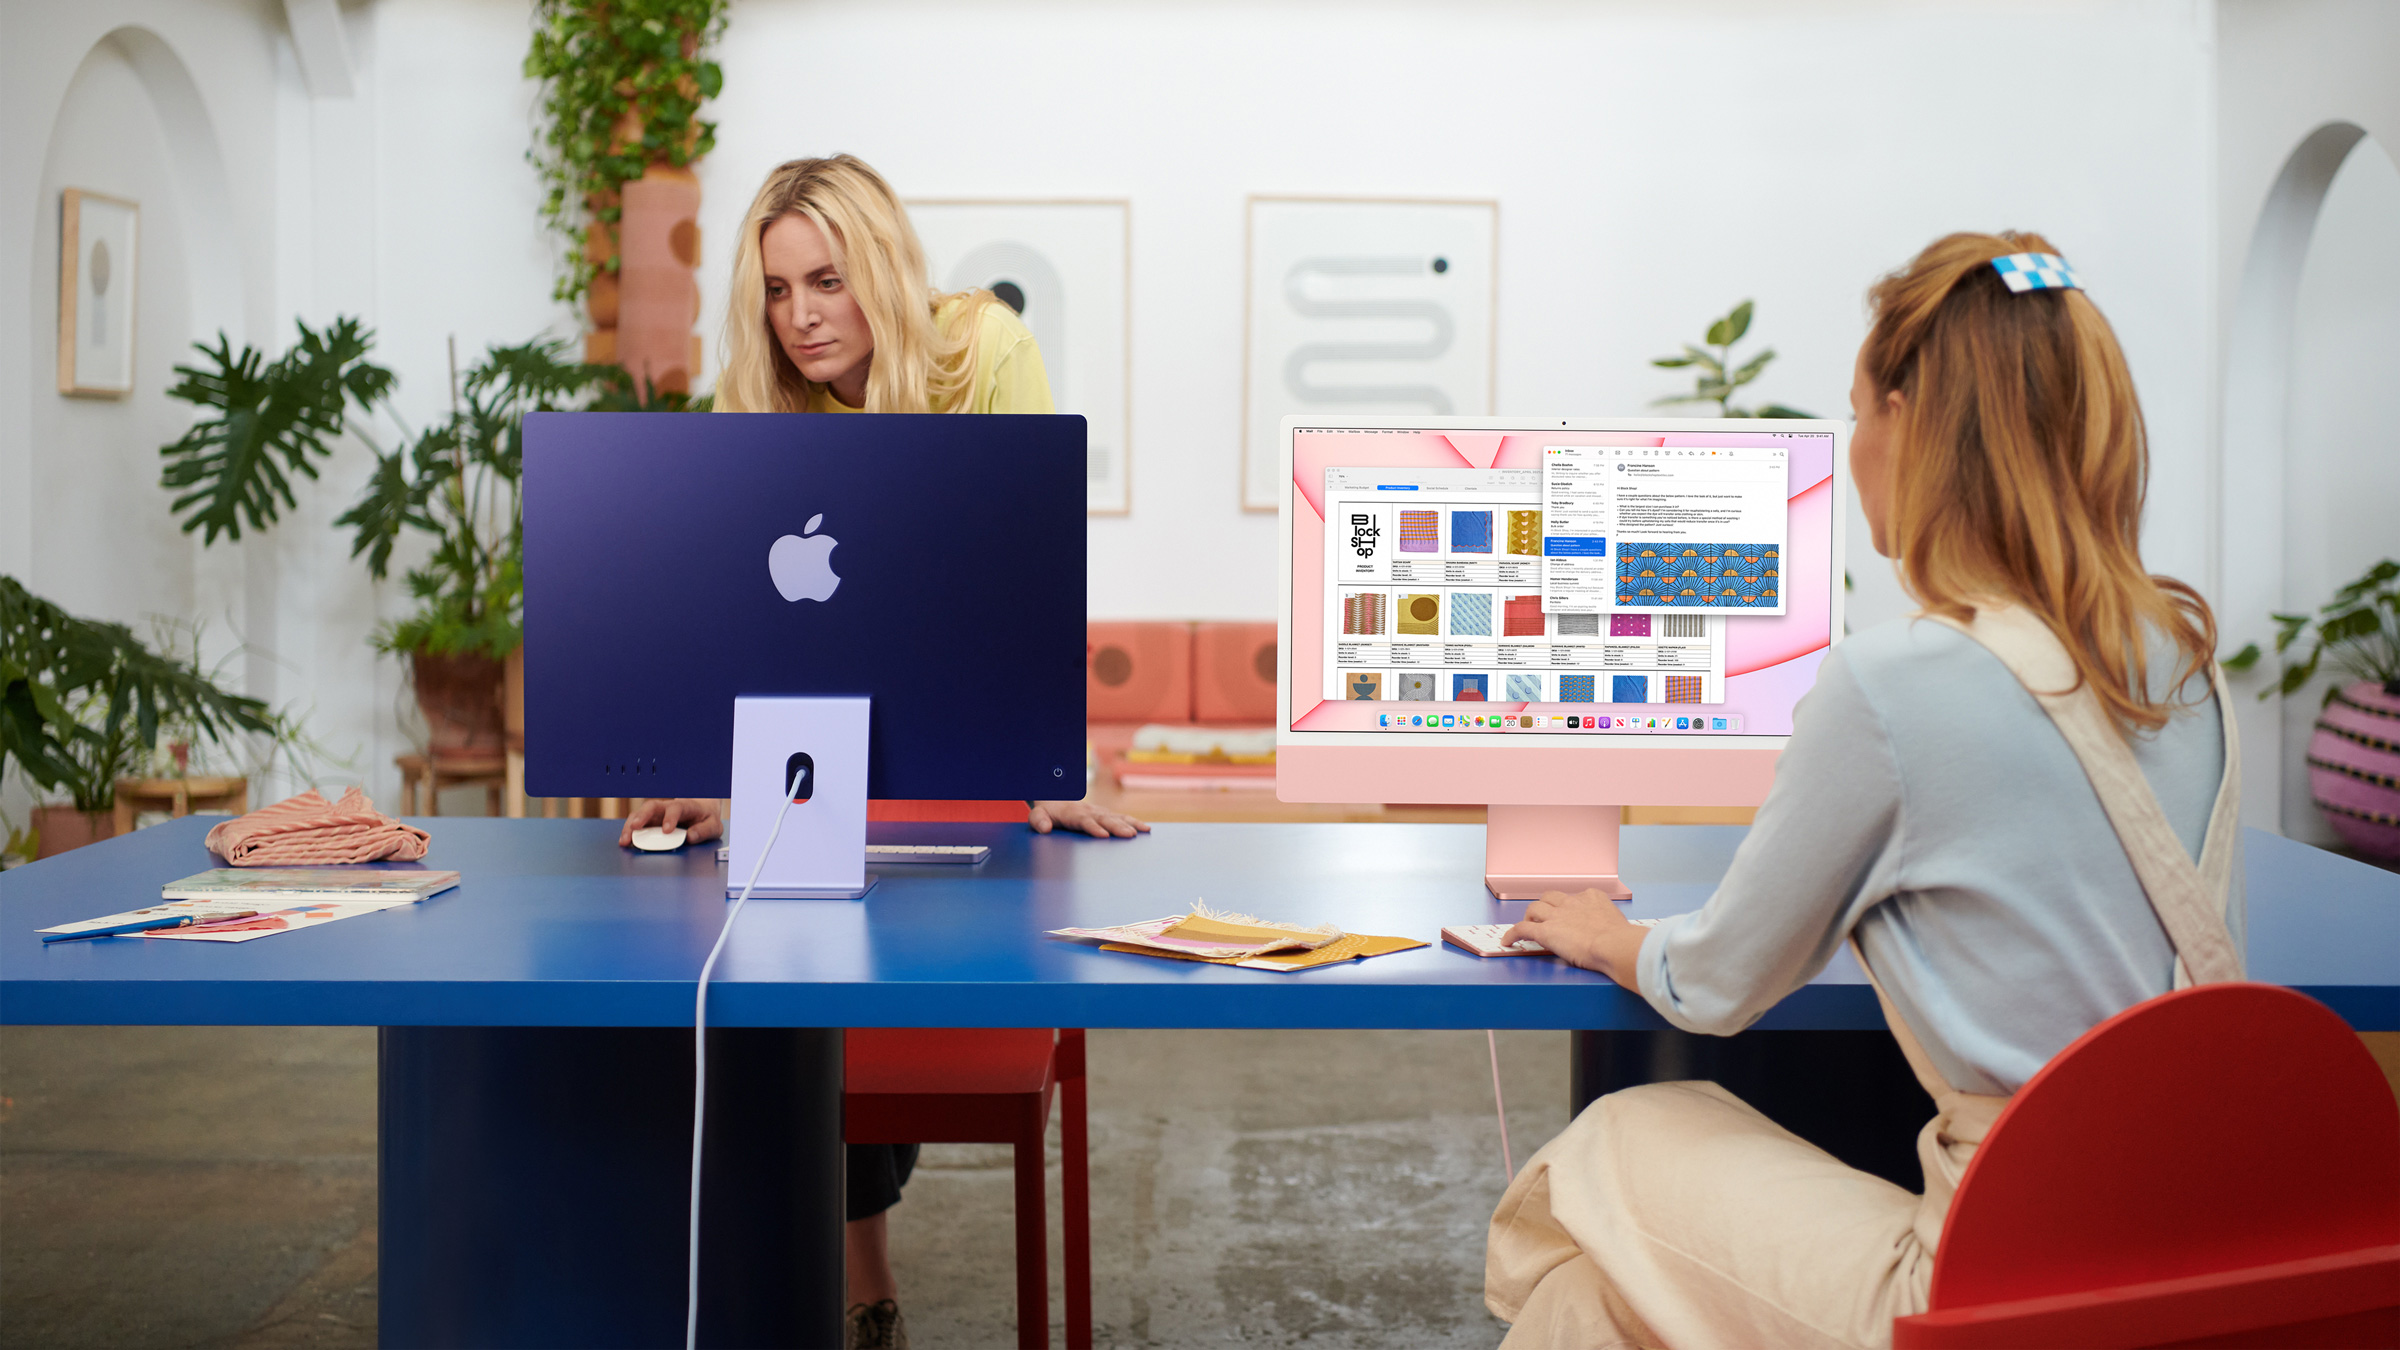 Apple ra mắt iMac 2021: tuỳ chọn 7 màu sắc nổi bật, chip M1, màn hình 24 inch